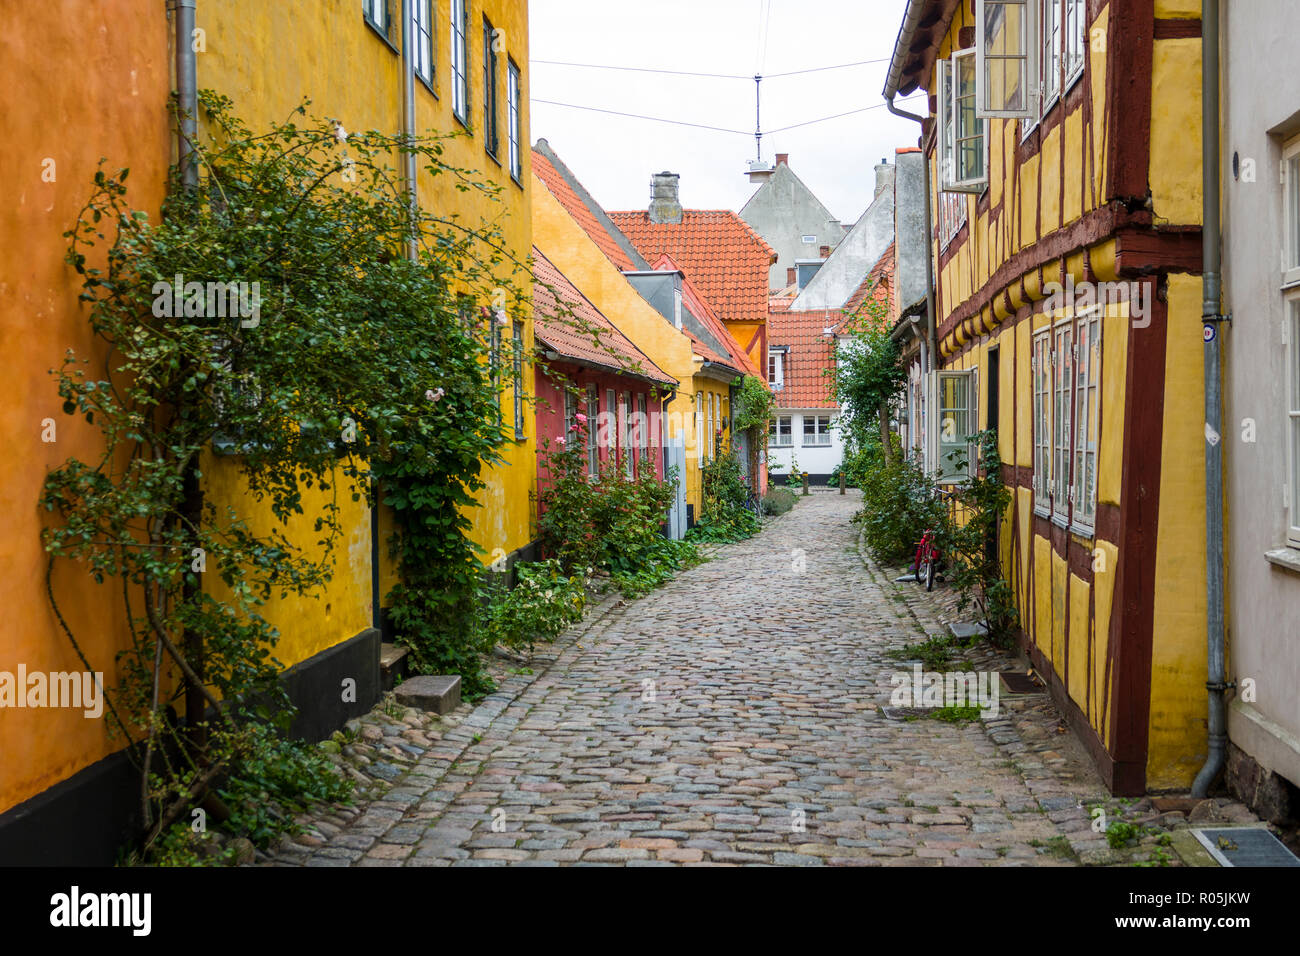 Helsingor también conocido como Elsinore es una ciudad portuaria en la parte oriental de Dinamarca Foto de stock